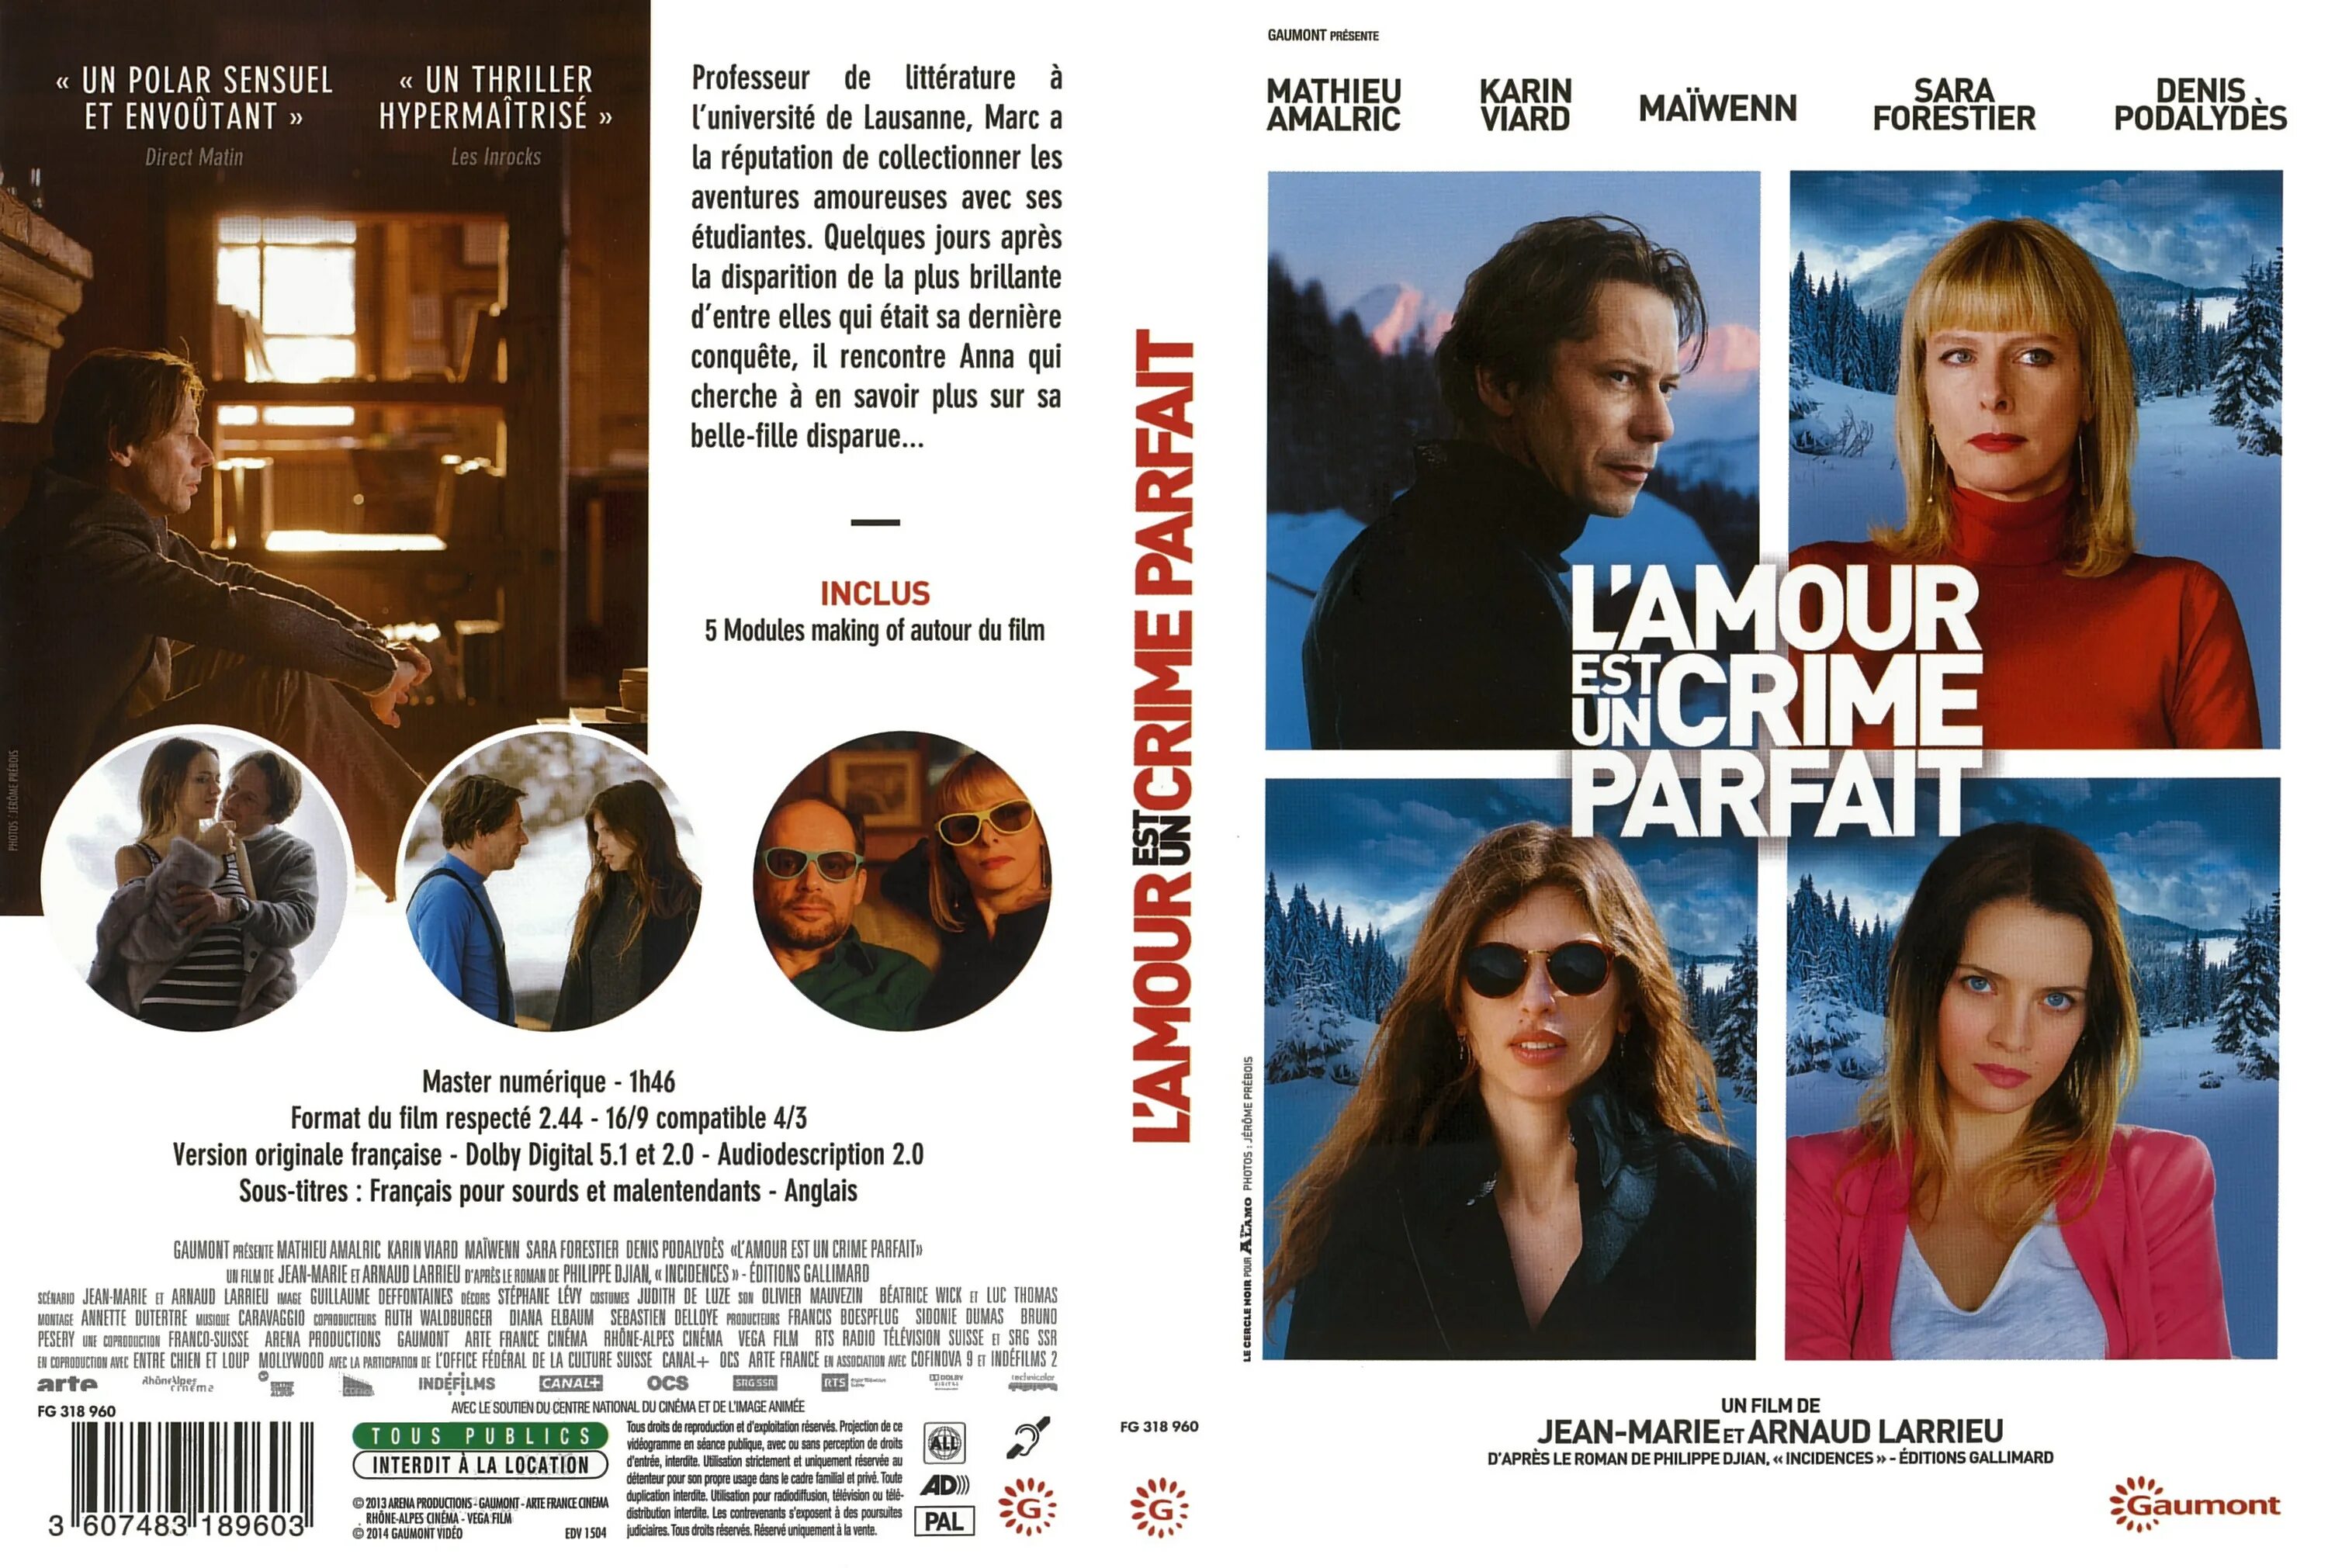 L amour est un. Любовь – это идеальное преступление (2013). L'amour est un Crime parfait (2013) DVD Cover.